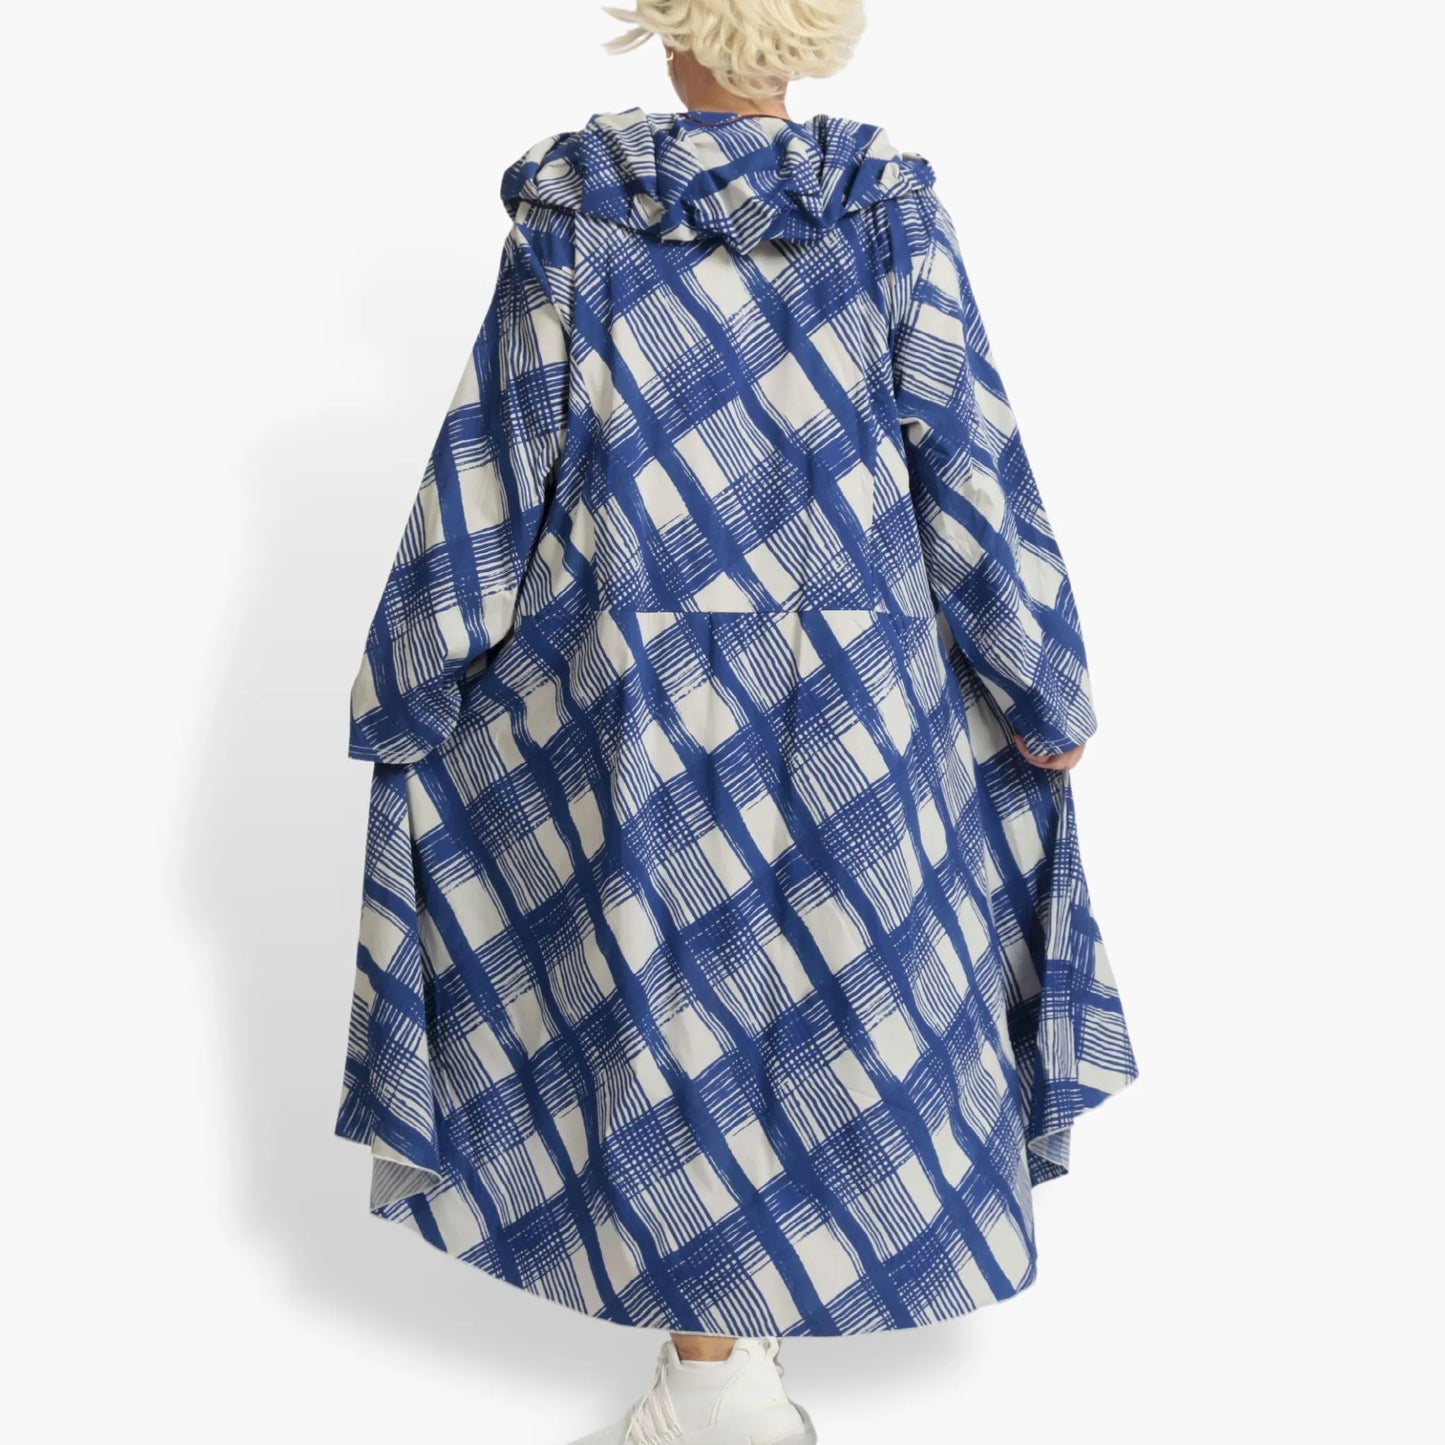 Sommer Mantel in gerundeter Form aus luftiger Popeline Qualität, Arabella in Blau-Grau